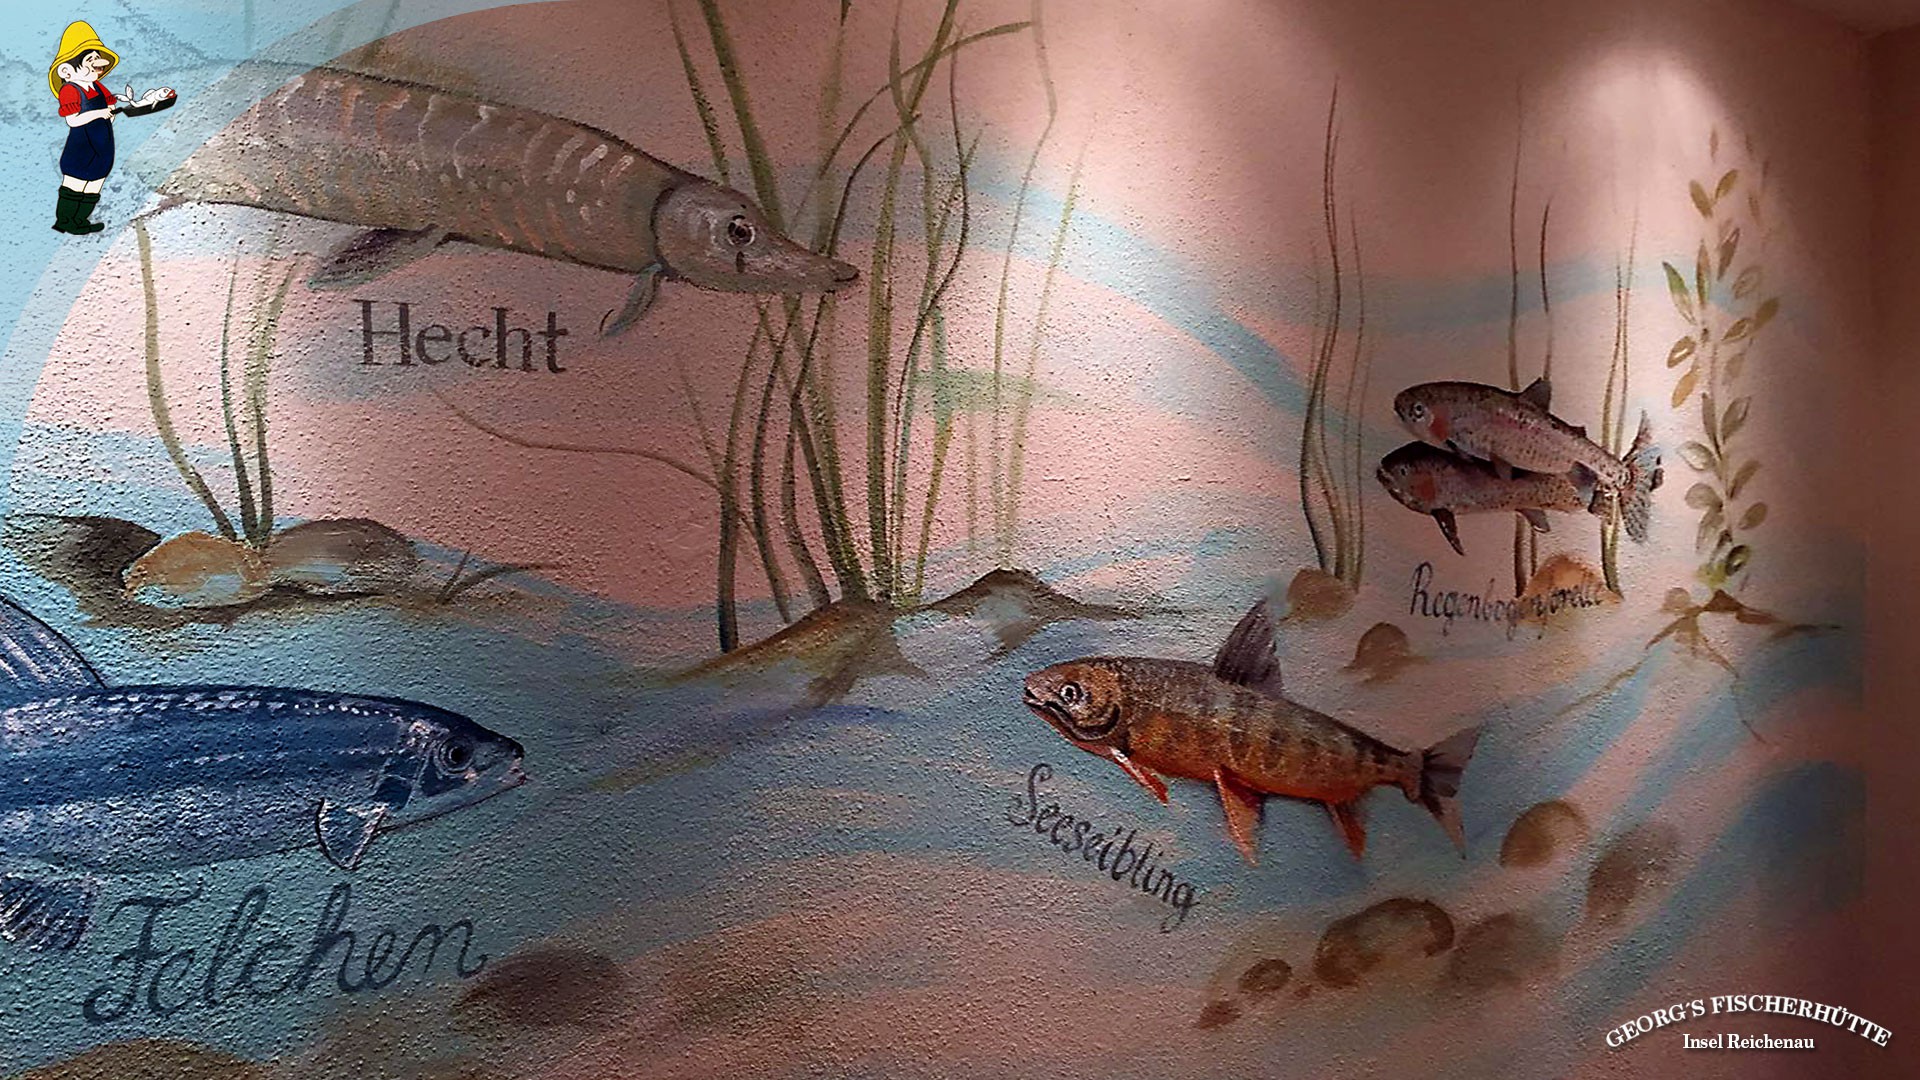 Fisch-Restaurant Georg's Fischerhütte, Konstanz, Insel Reichenau: Bodenseefische